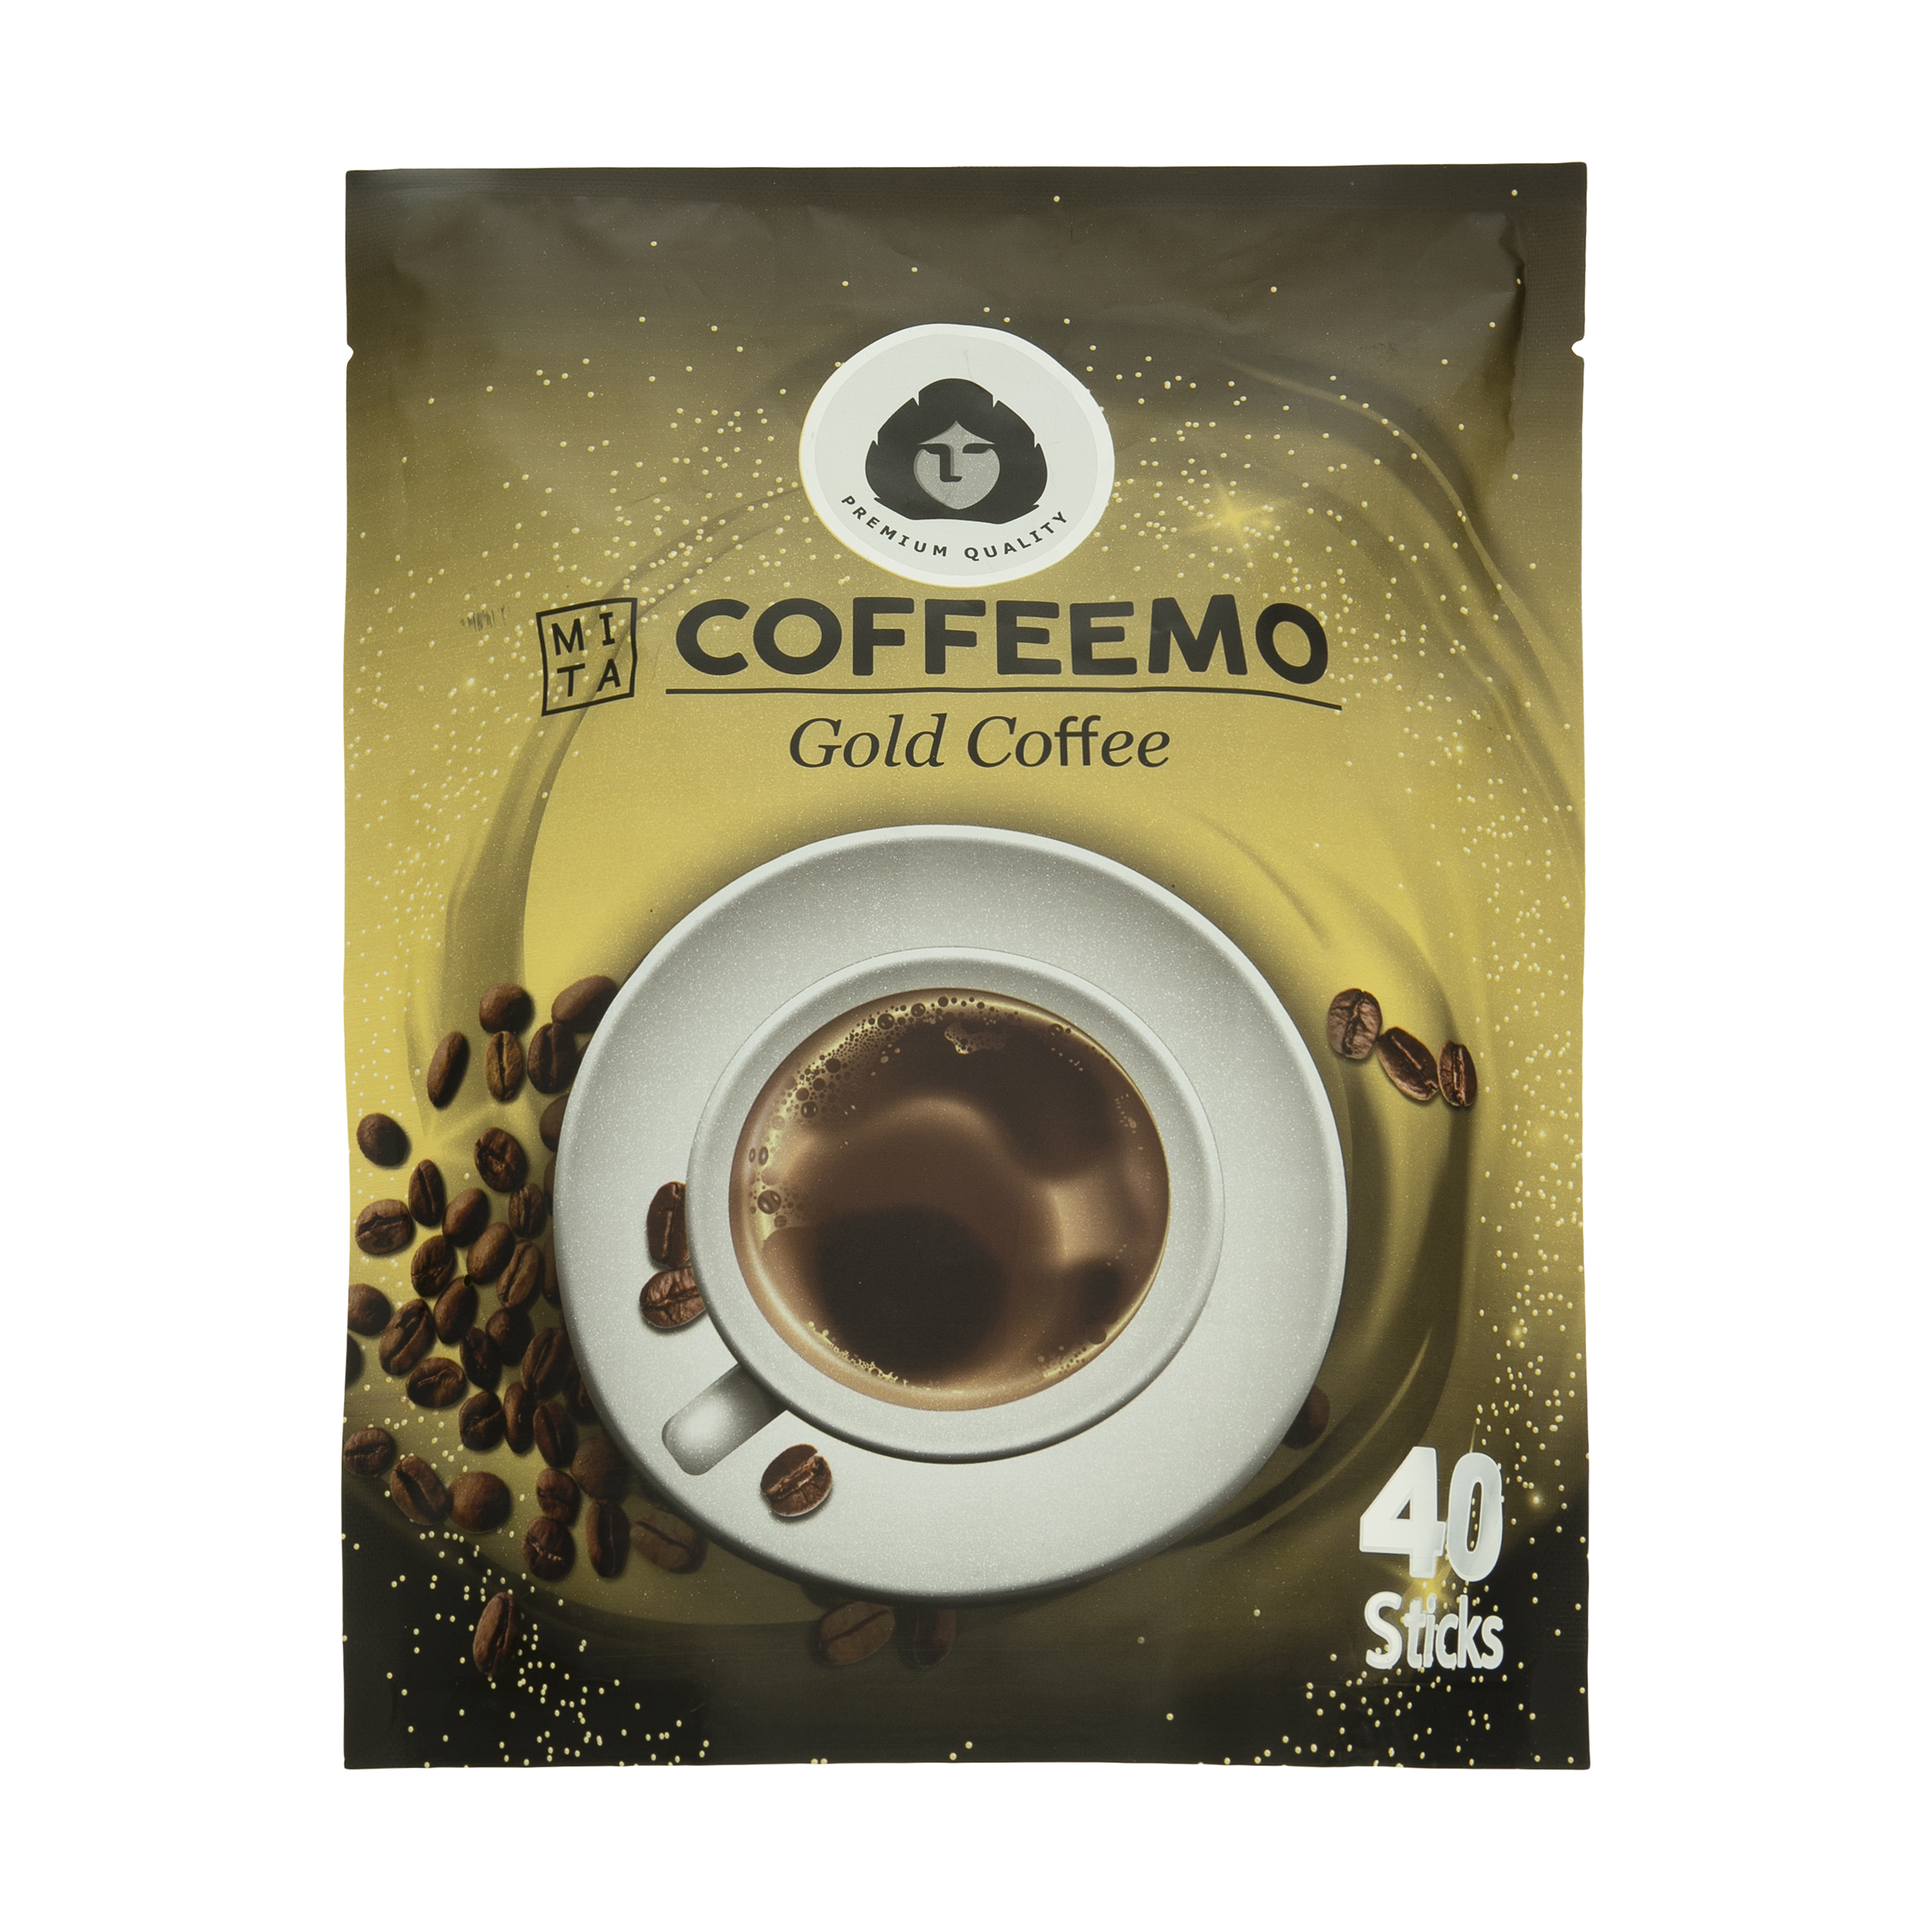 پودر قهوه فوری گلد کافیمو - 40 ساشه 2 گرمی